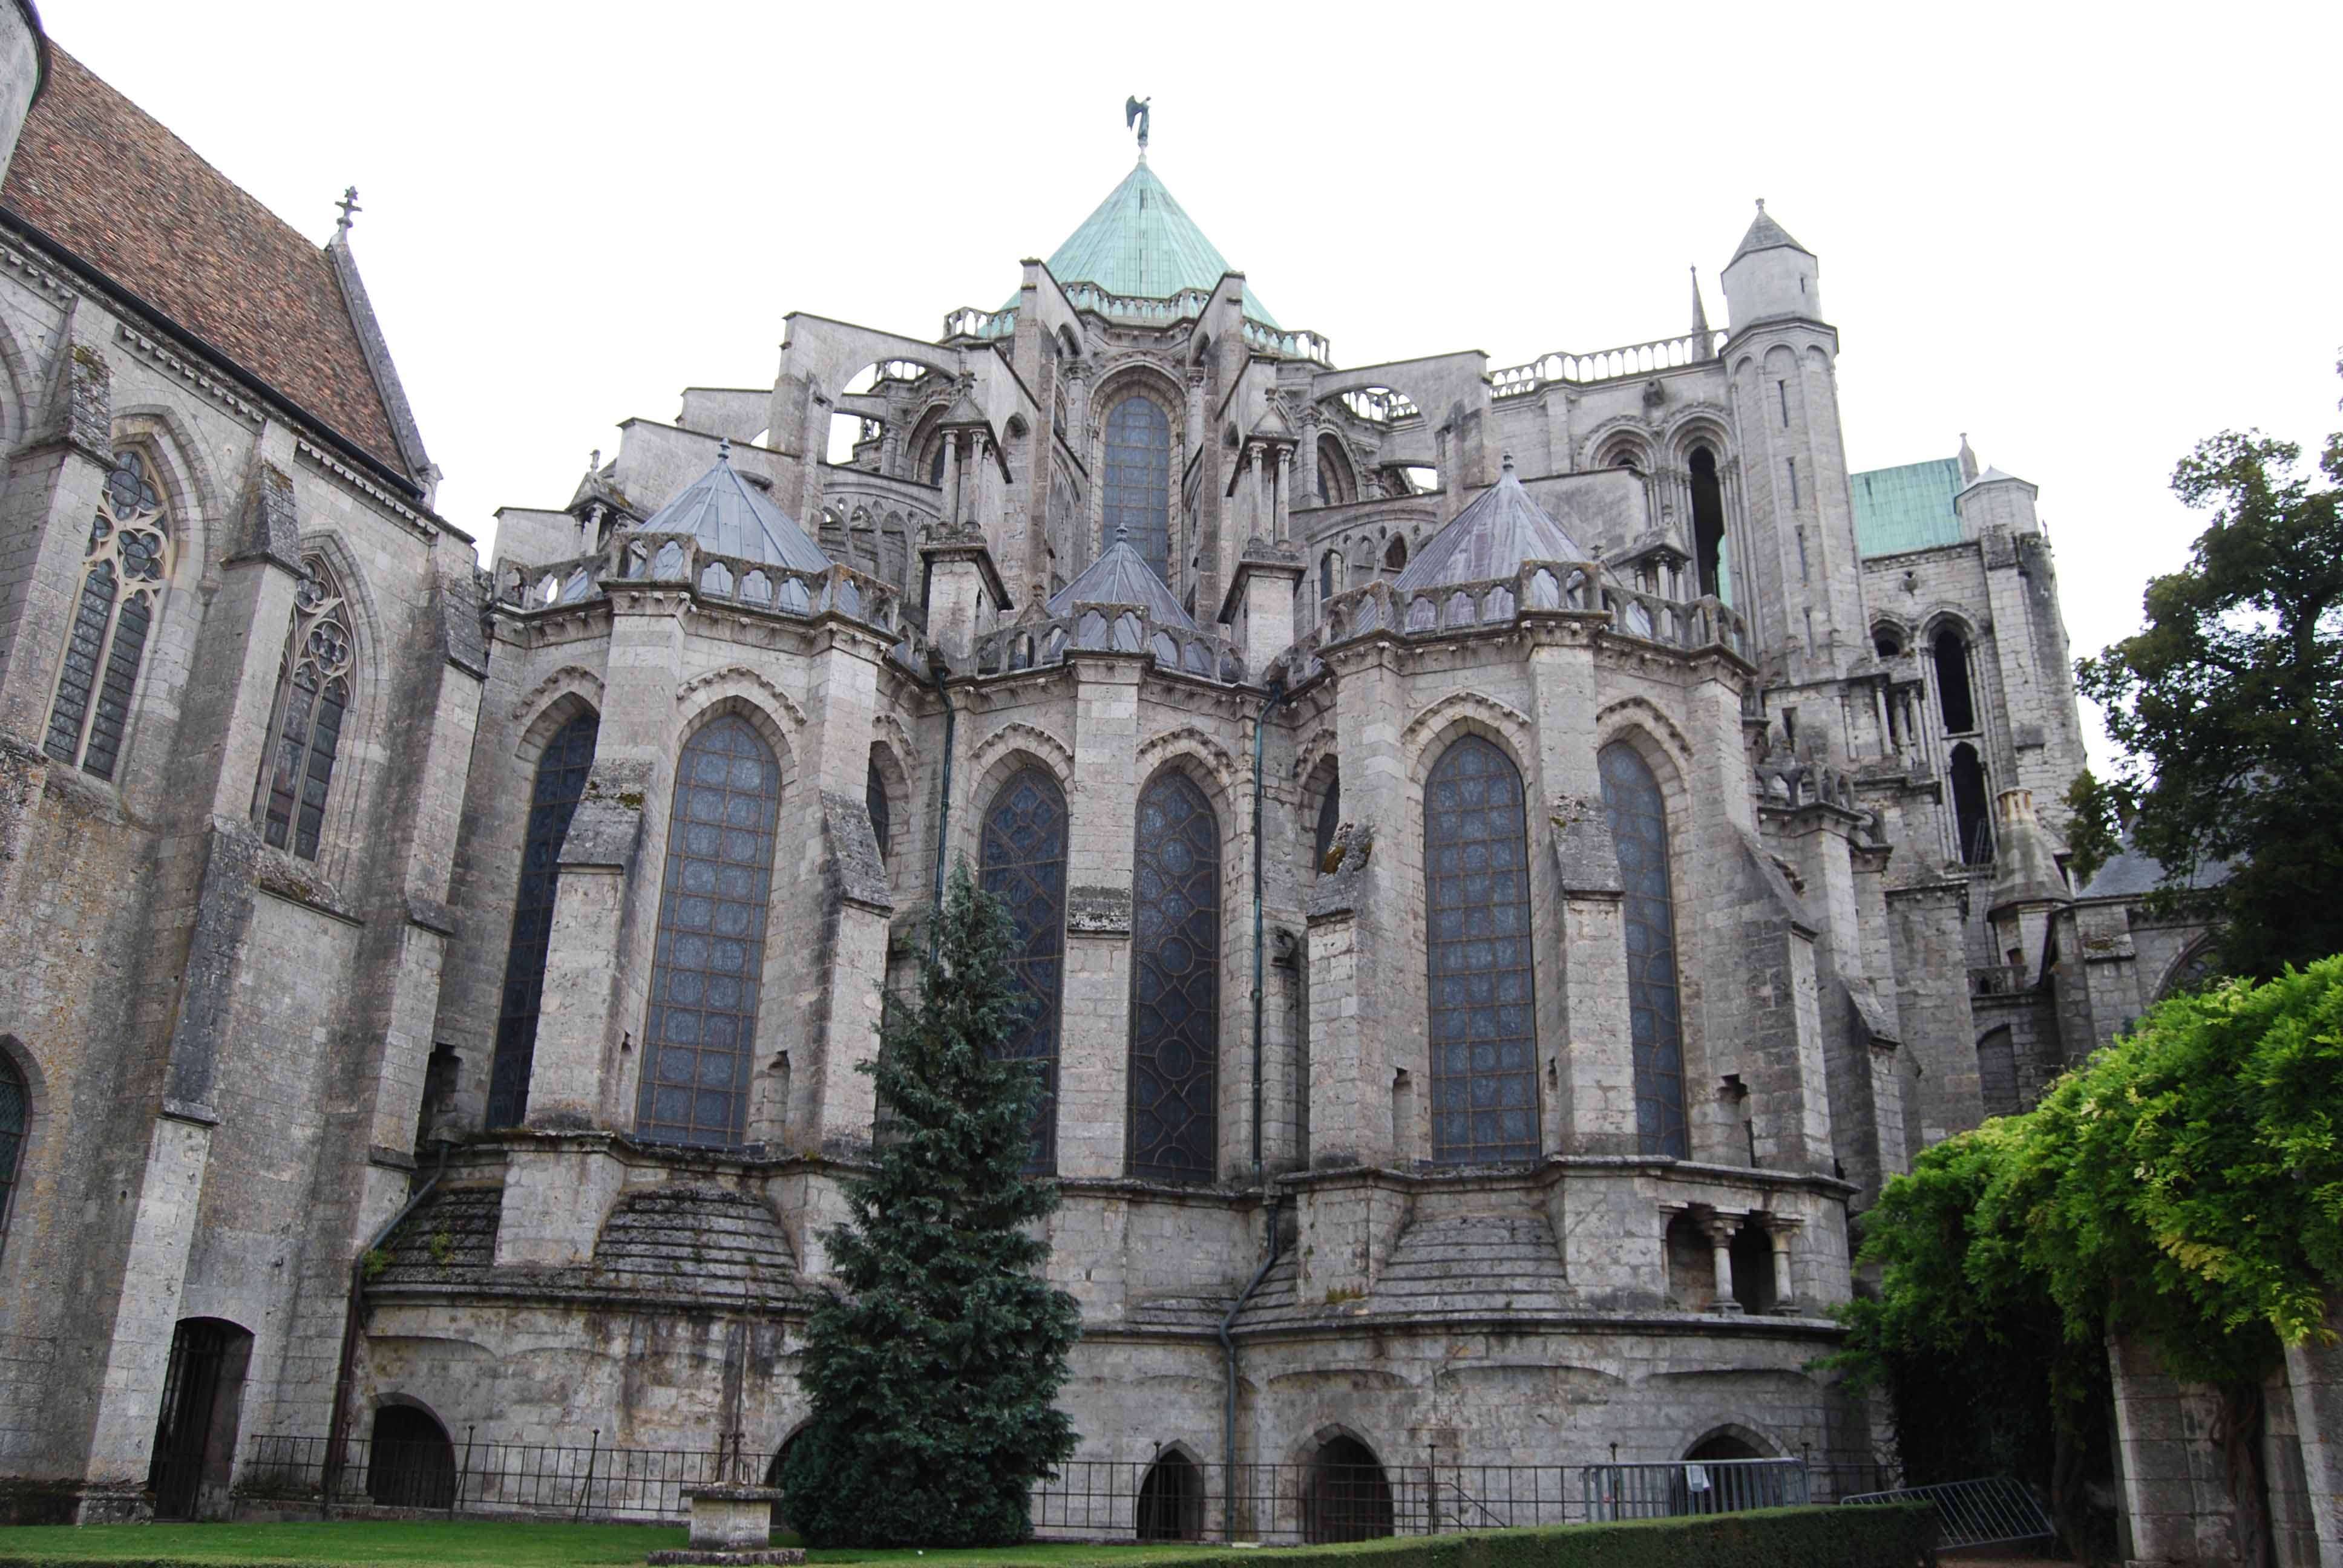 Arquitectura de la catedral de Chartres - Chartres: Arte, espiritualidad y esoterismo. (10)